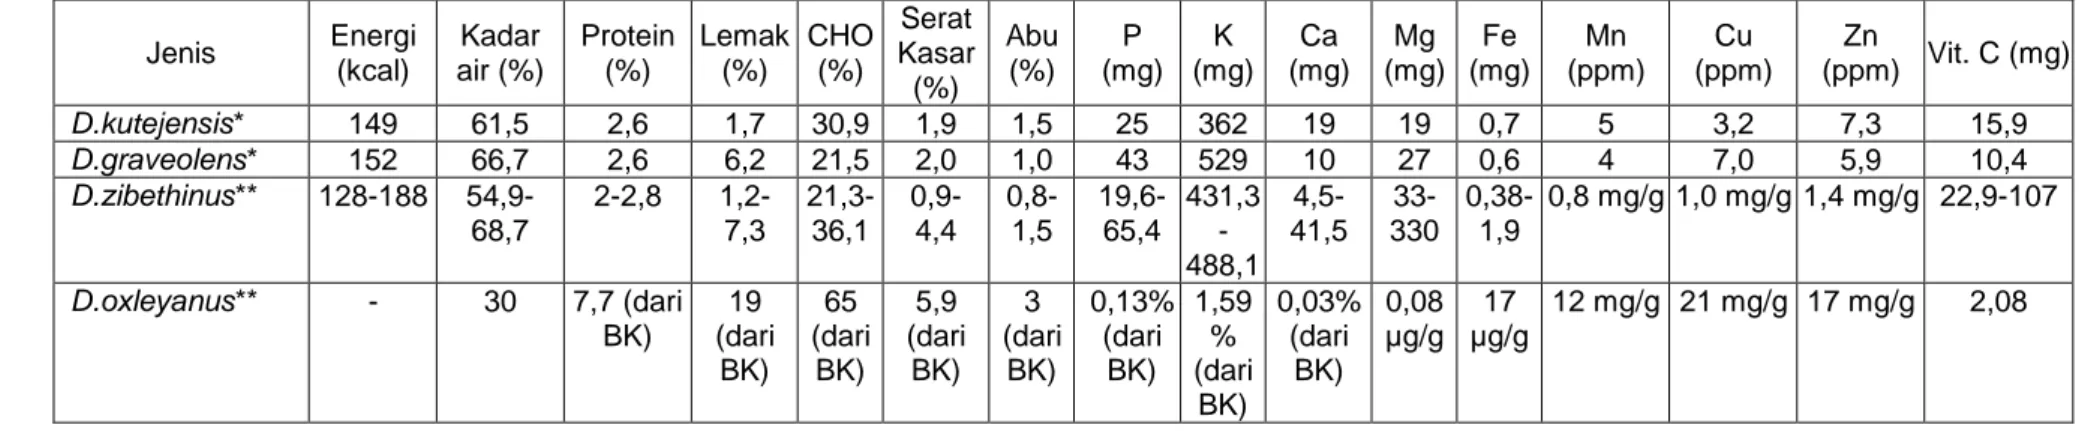 Tabel 2. Kondisi nutrisi buah Lai (Durio kutejensis) dengan beberapa jenis Durio lainnya  Jenis  Energi  (kcal)  Kadar  air (%)  Protein (%)  Lemak (%)  CHO (%)  Serat  Kasar  (%)  Abu (%)  P  (mg)  K  (mg)  Ca  (mg)  Mg  (mg)  Fe  (mg)  Mn  (ppm)  Cu   (p